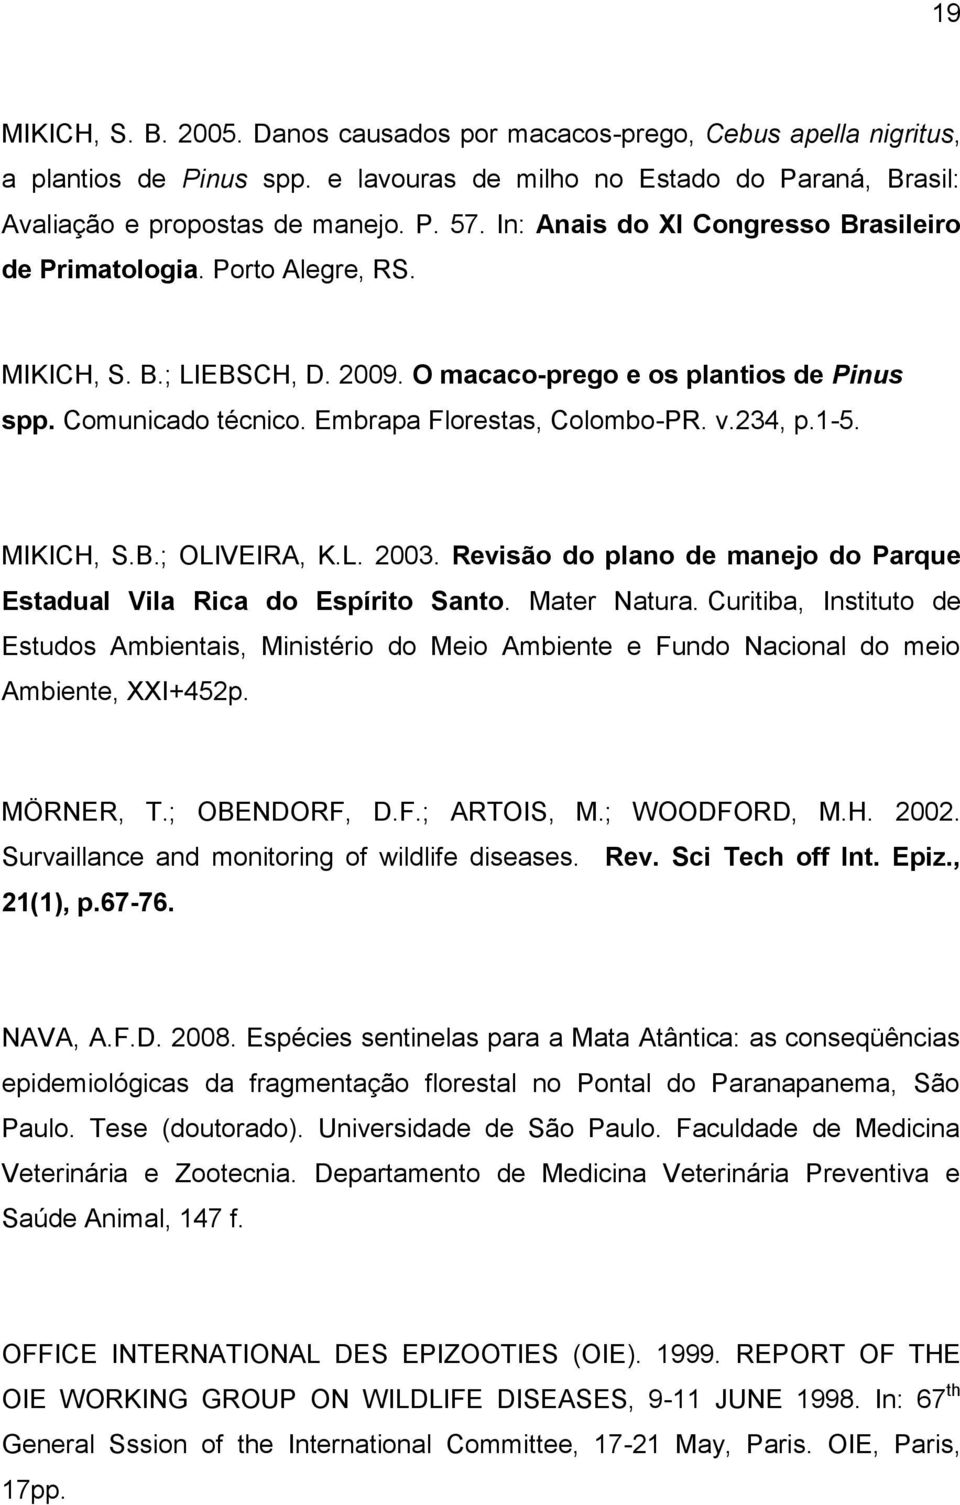 v.234, p.1-5. MIKICH, S.B.; OLIVEIRA, K.L. 2003. Revisão do plano de manejo do Parque Estadual Vila Rica do Espírito Santo. Mater Natura.